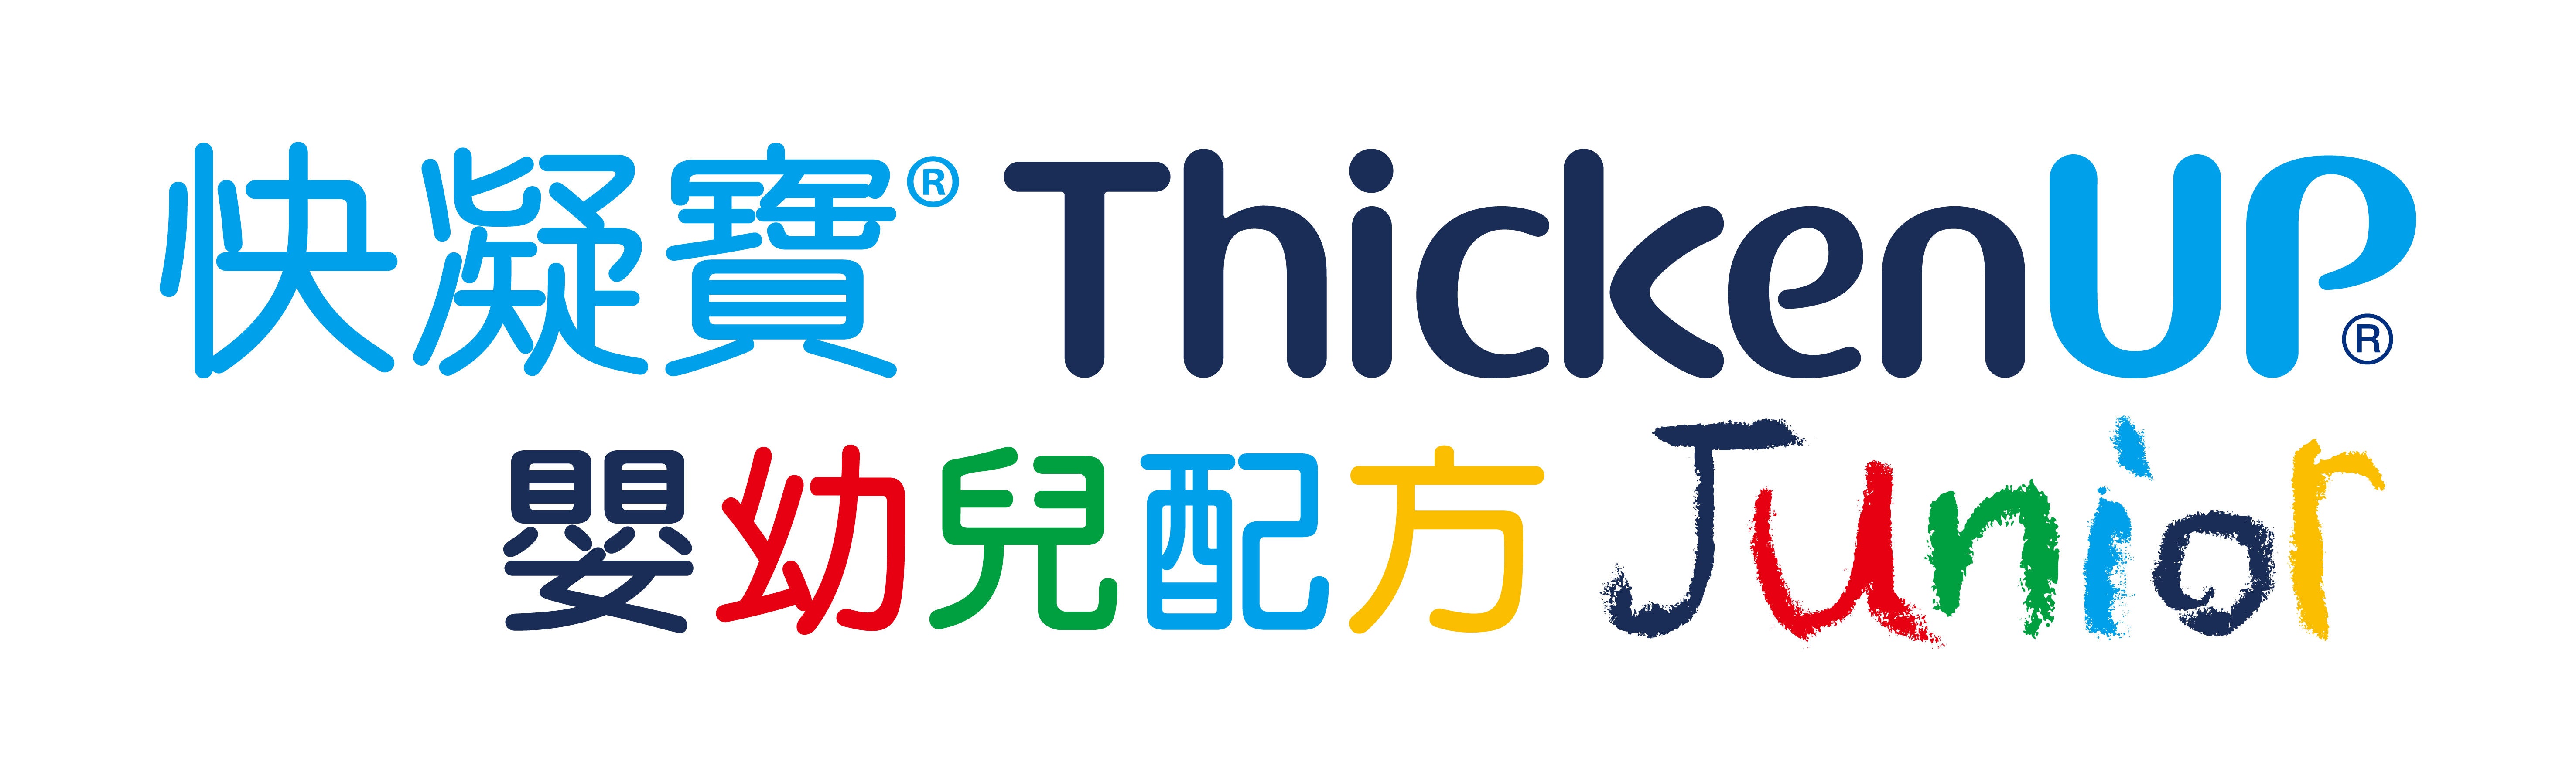 thickenup-junior